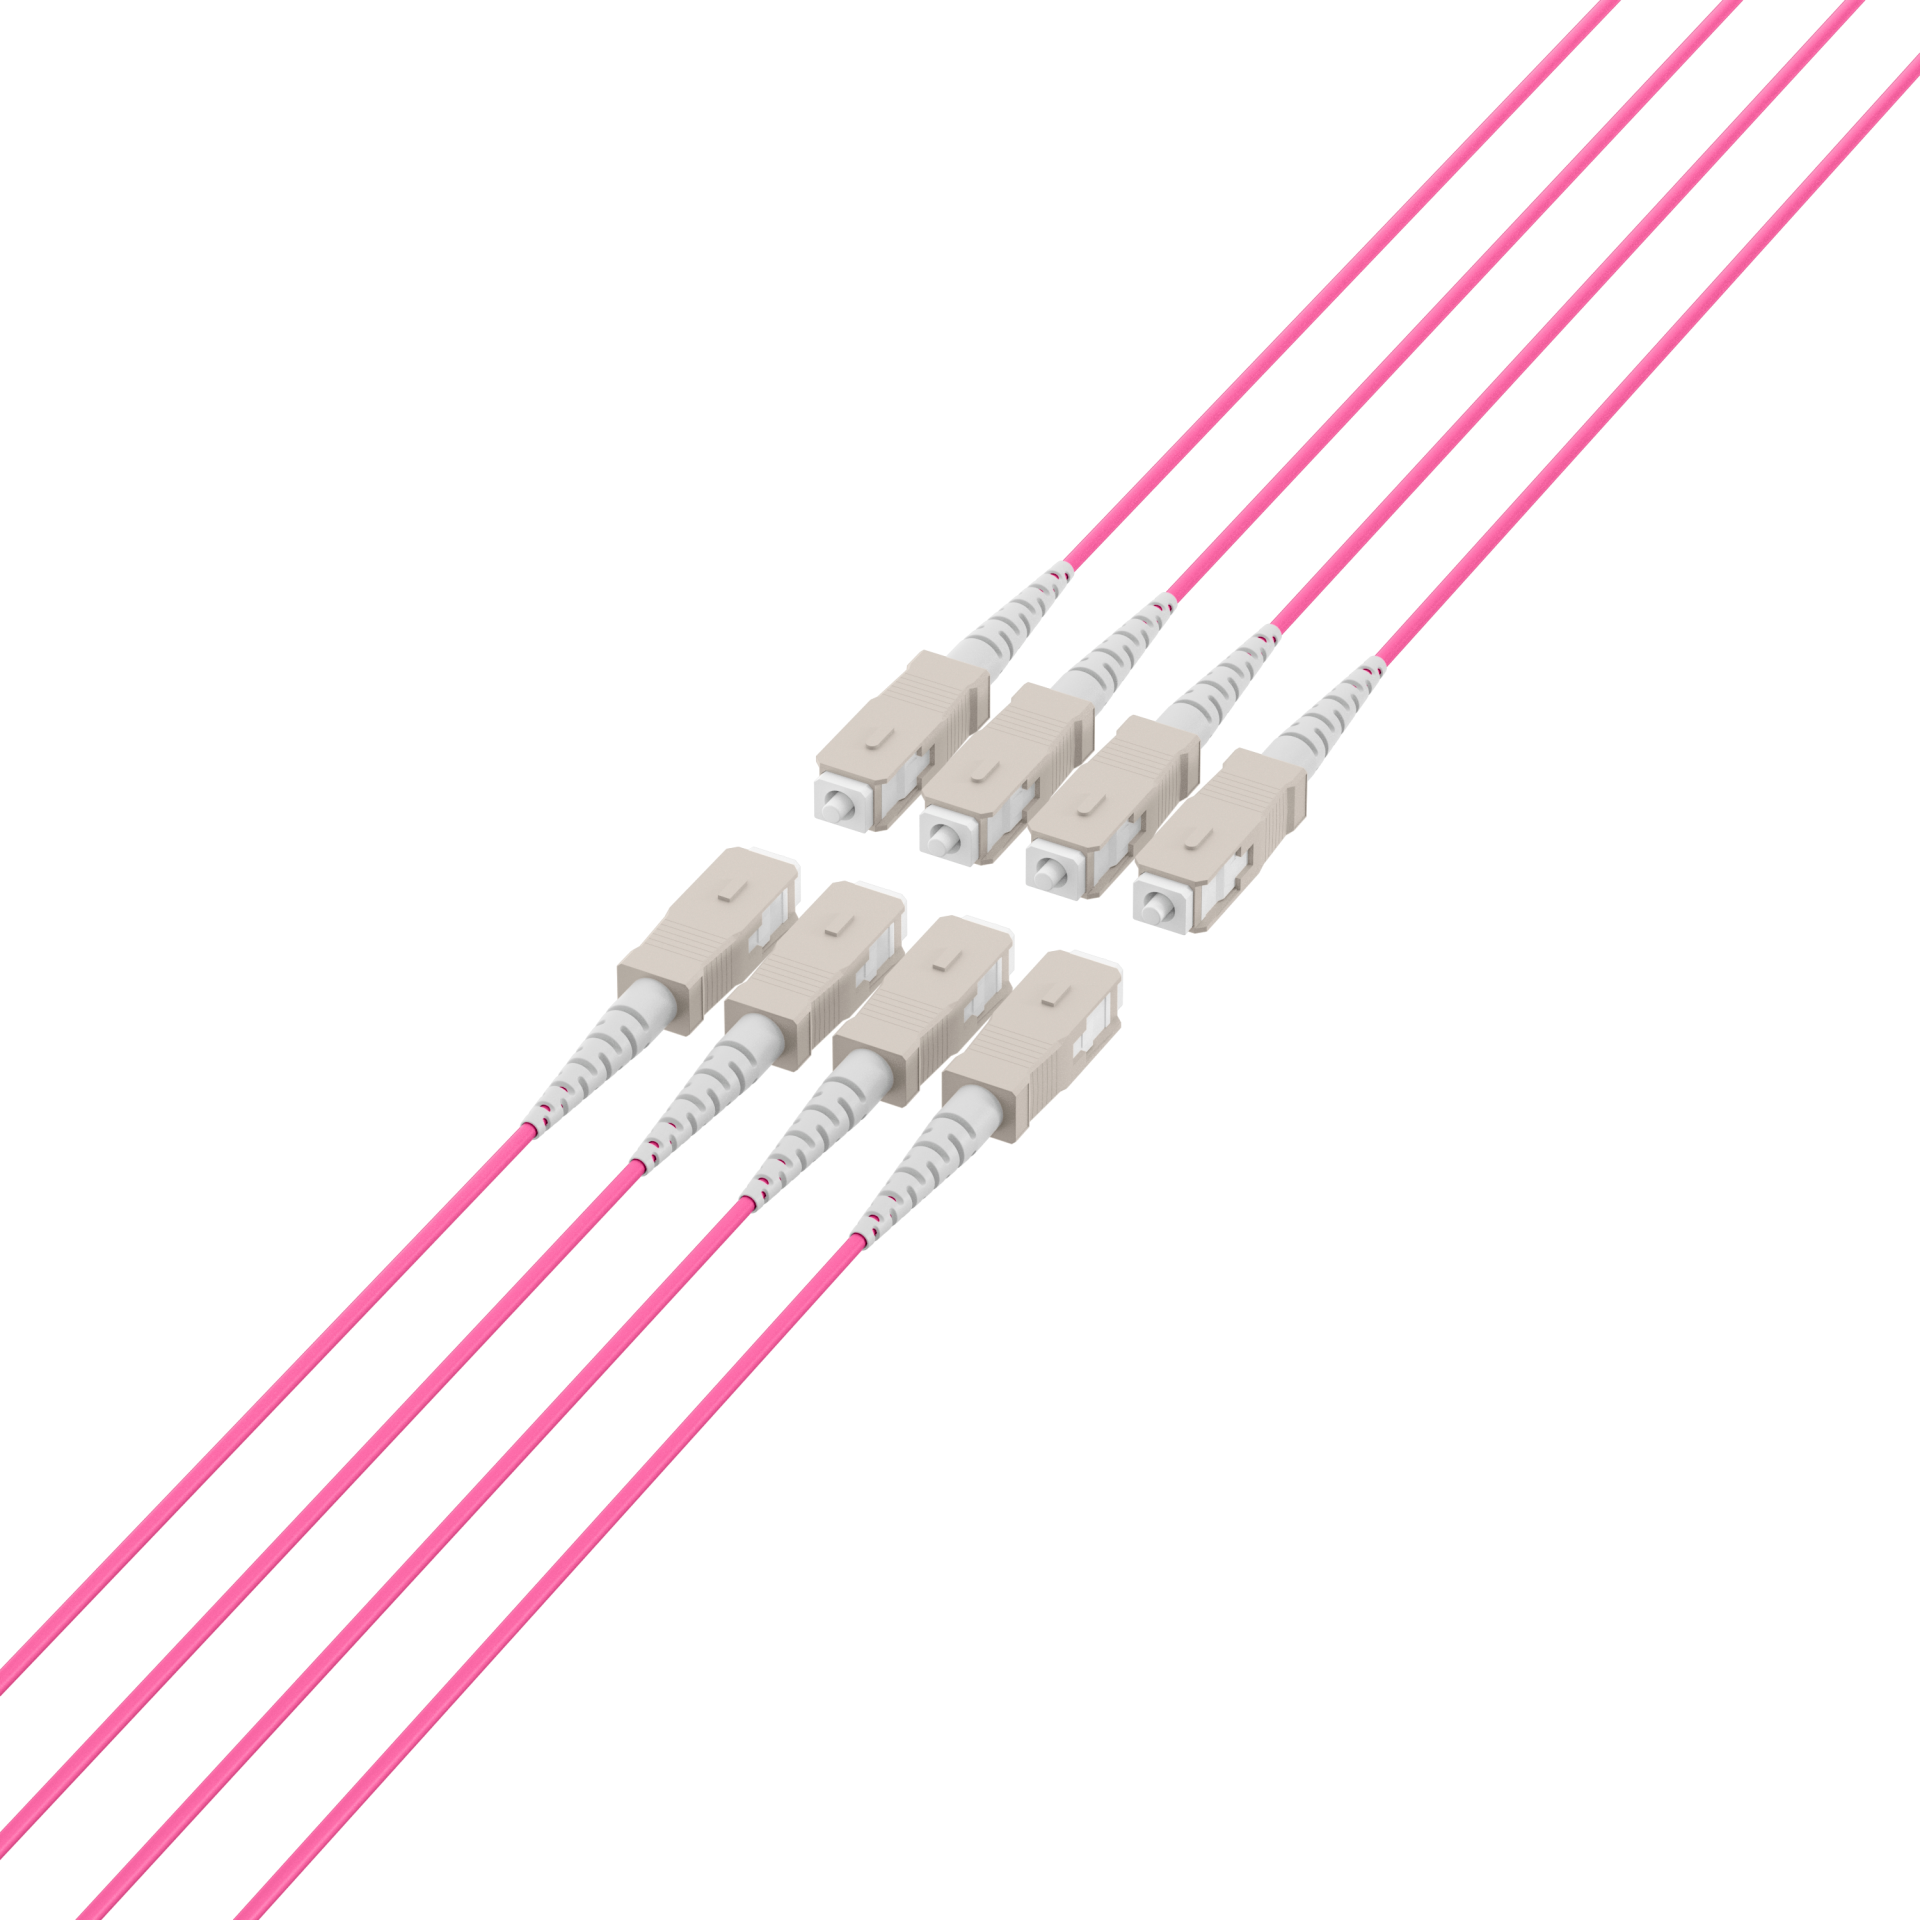 Trunk cable U-DQ(ZN)BH OM4 8G (1x8) SC-SC,200m Dca LSZH